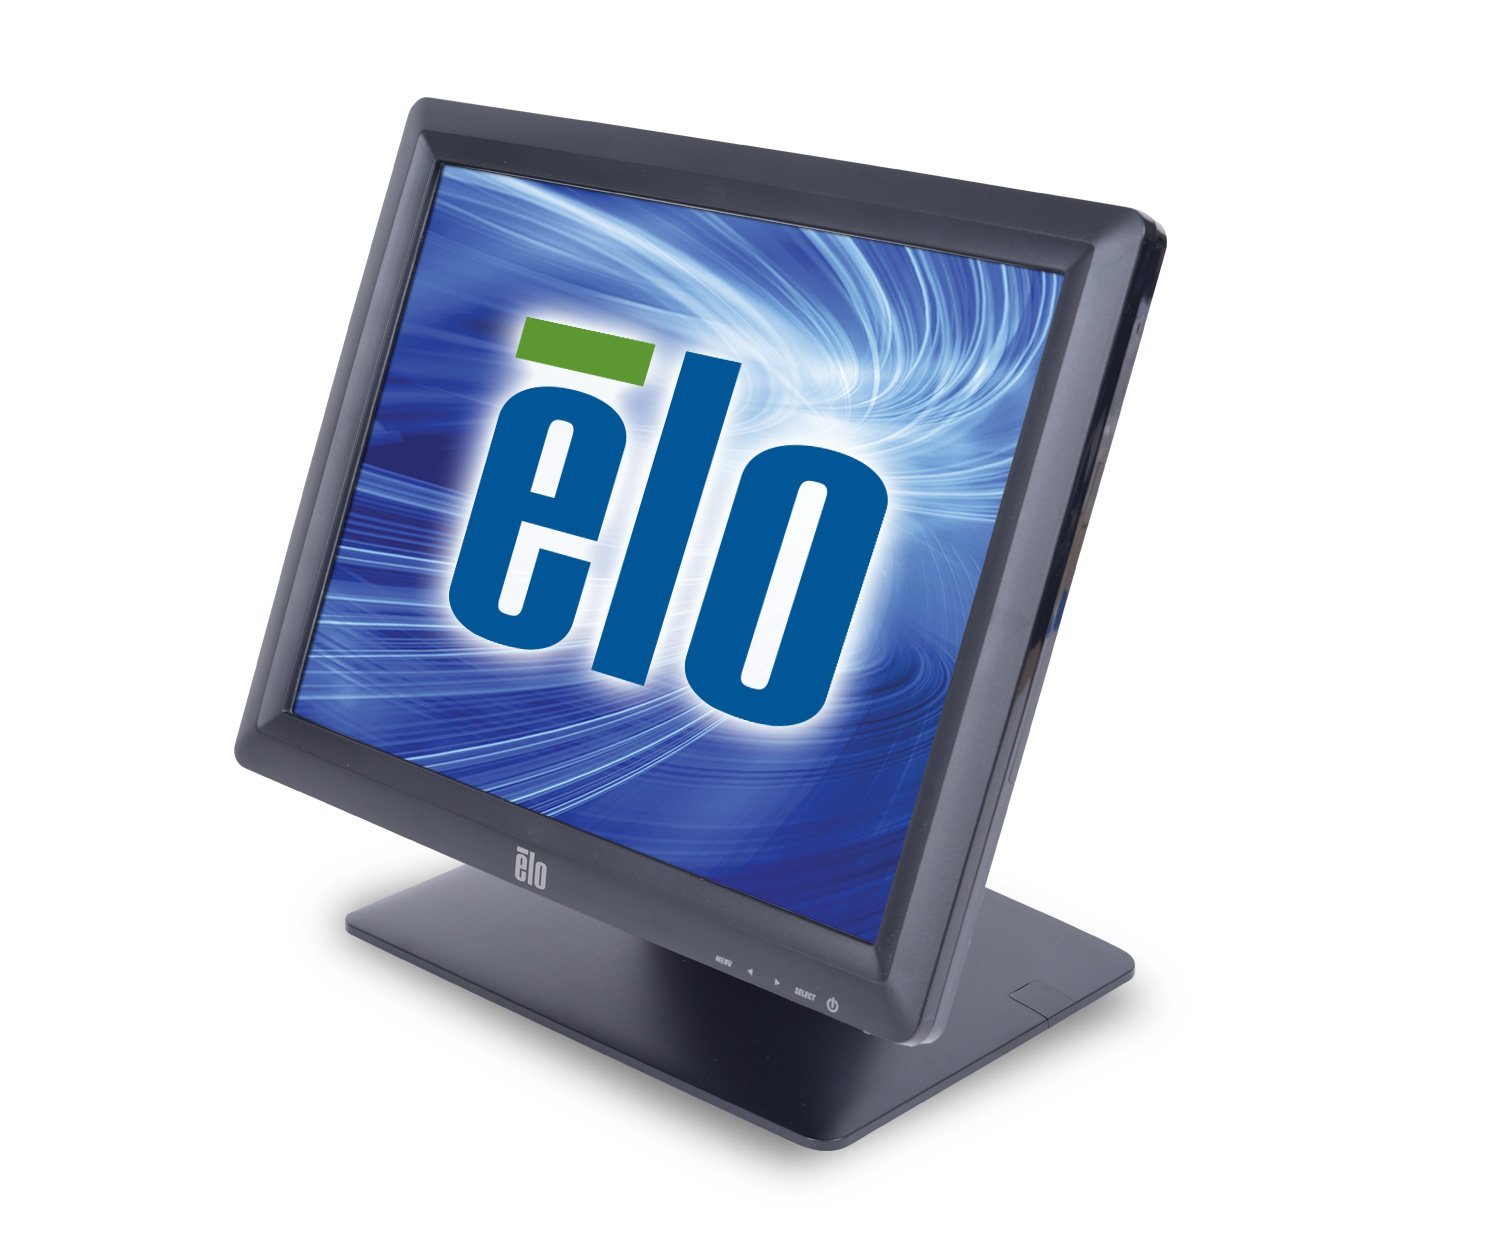 Elo Monitory dotykowe  Desktop 1517L AccuTouch — 15-calowy monitor LED z ekranem dotykowym